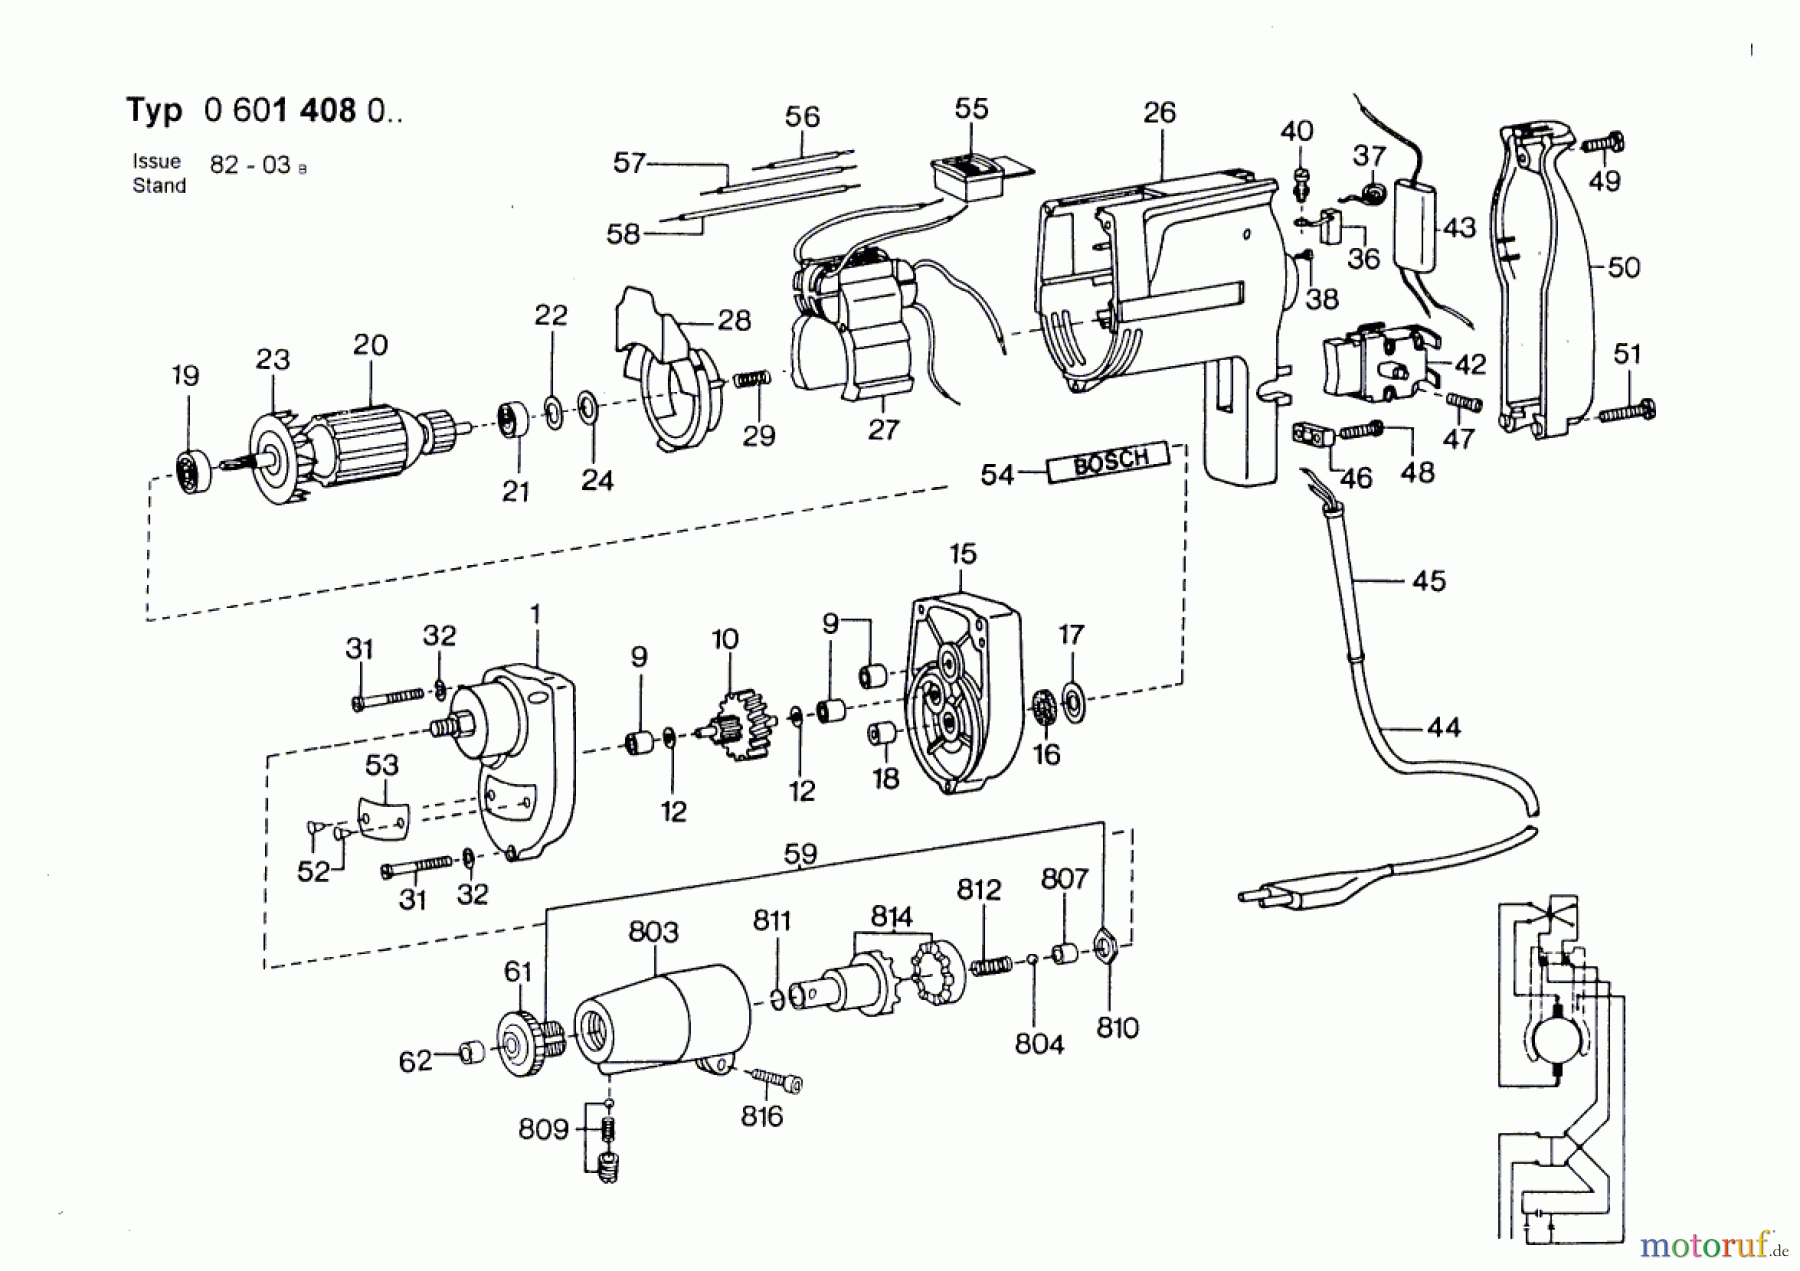  Bosch Werkzeug Bohrschrauber ---- Seite 1